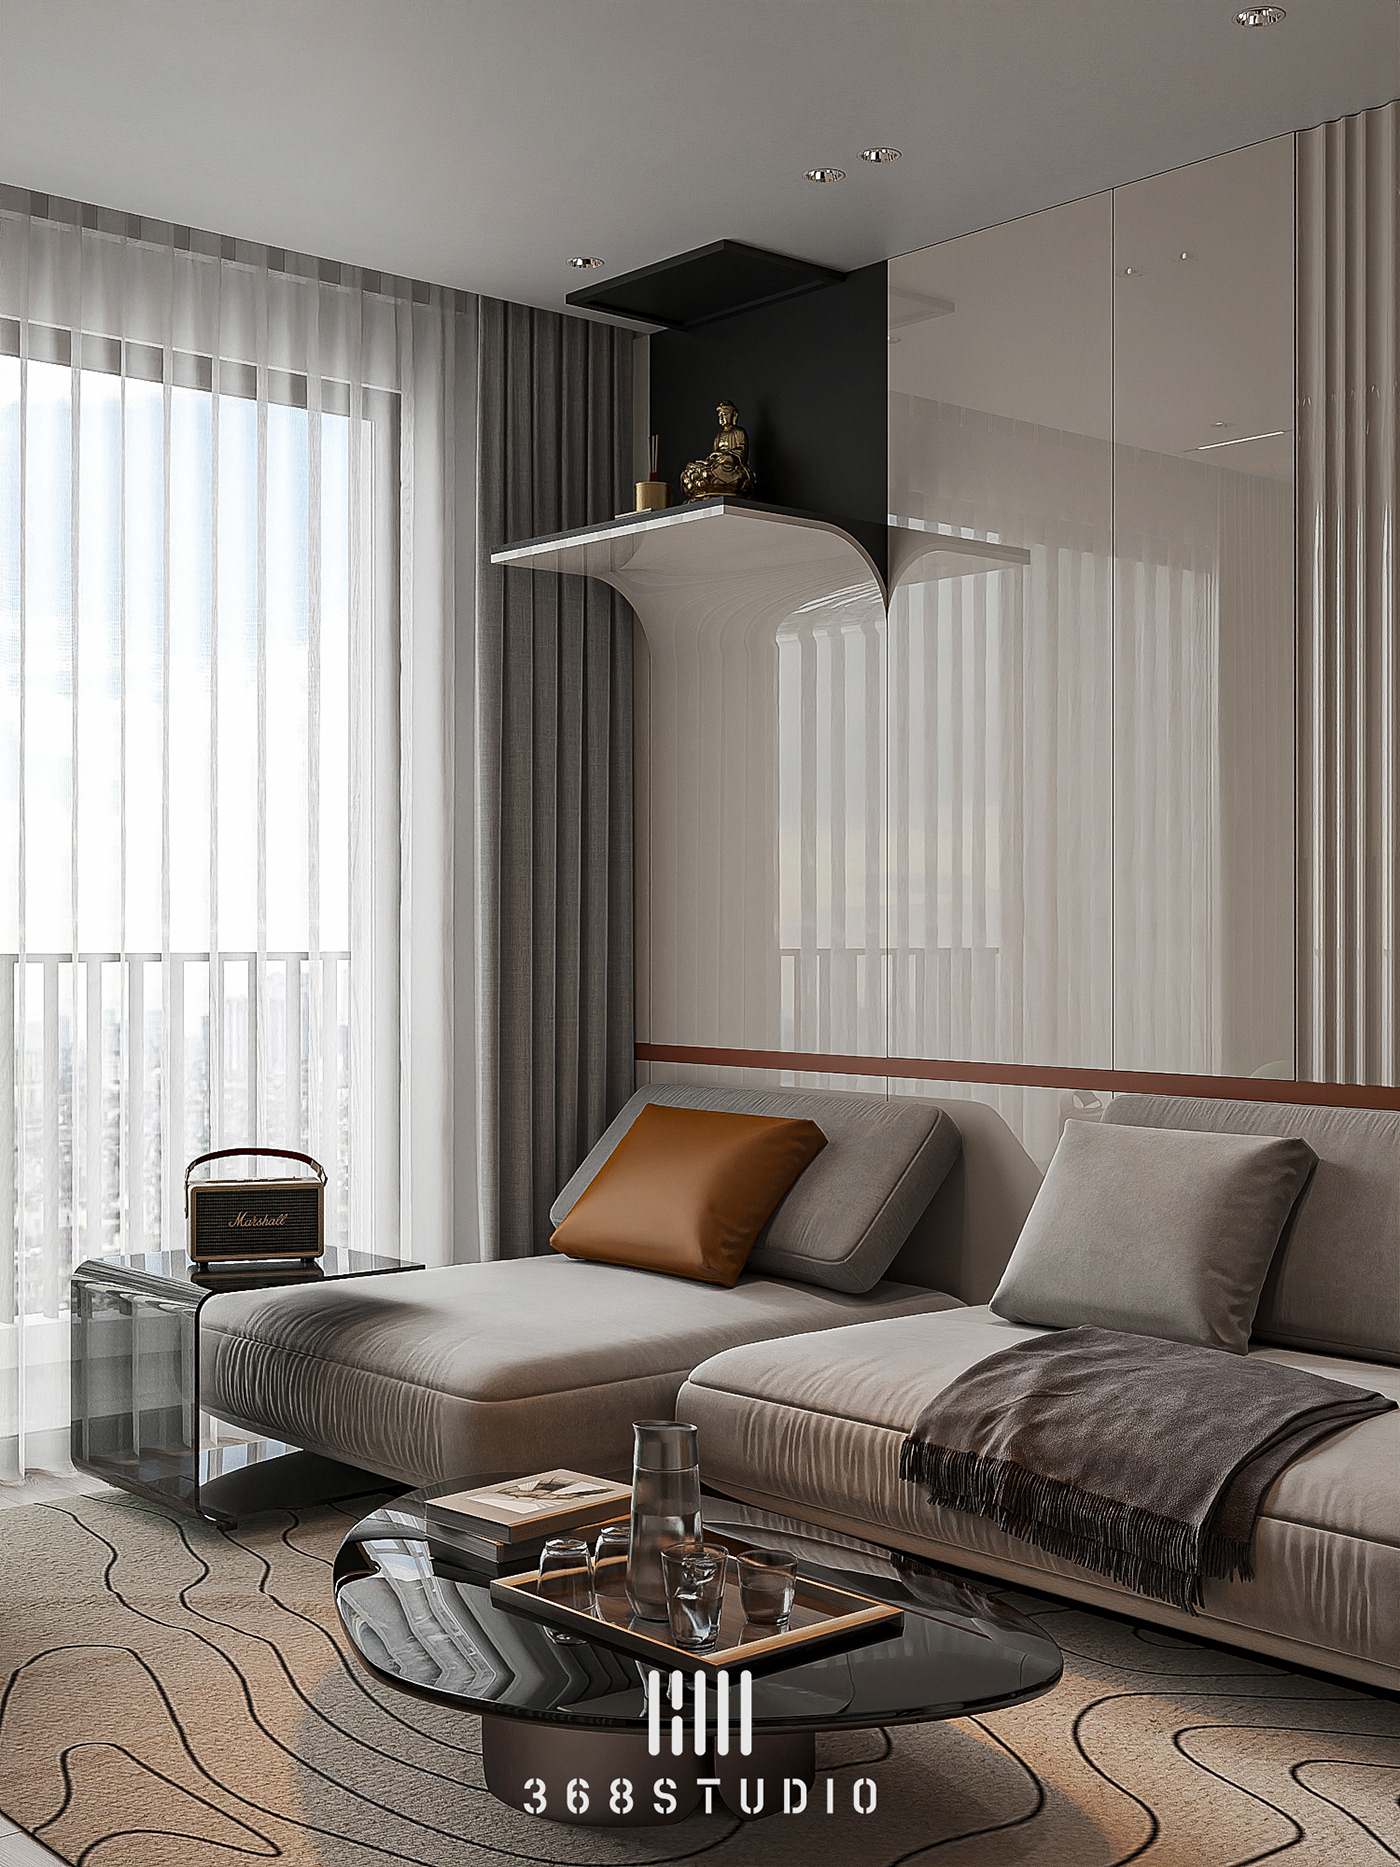 archviz interior design  3dsmax corona render  Modern Design adobephotoshop designer 3DArtist visualization Render